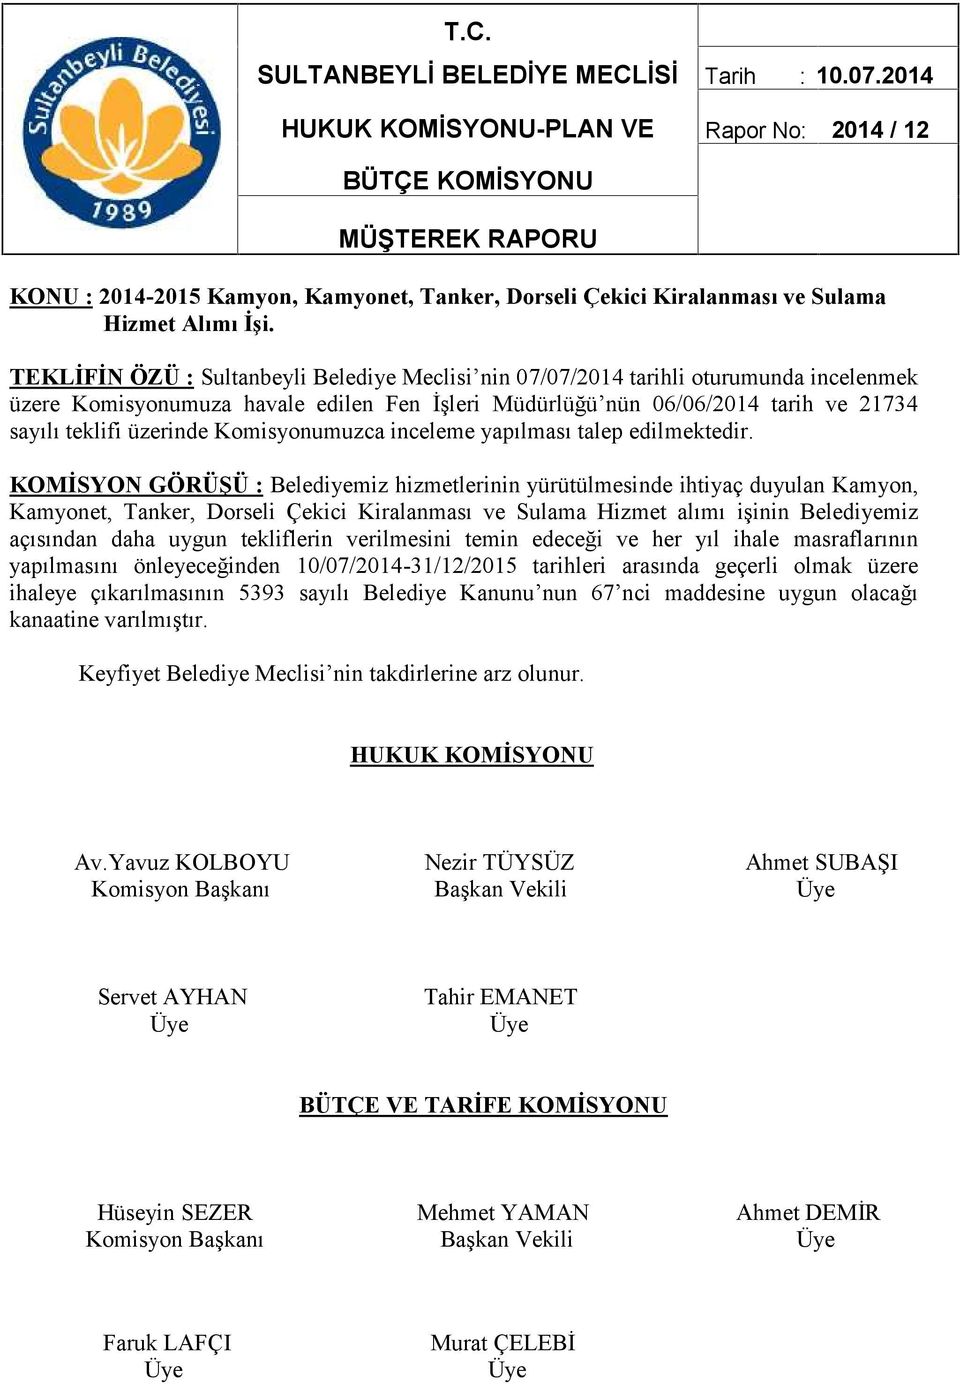 TEKLİFİN ÖZÜ : Sultanbeyli Belediye Meclisi nin 07/07/2014 tarihli oturumunda incelenmek üzere Komisyonumuza havale edilen Fen İşleri Müdürlüğü nün 06/06/2014 tarih ve 21734 sayılı teklifi üzerinde